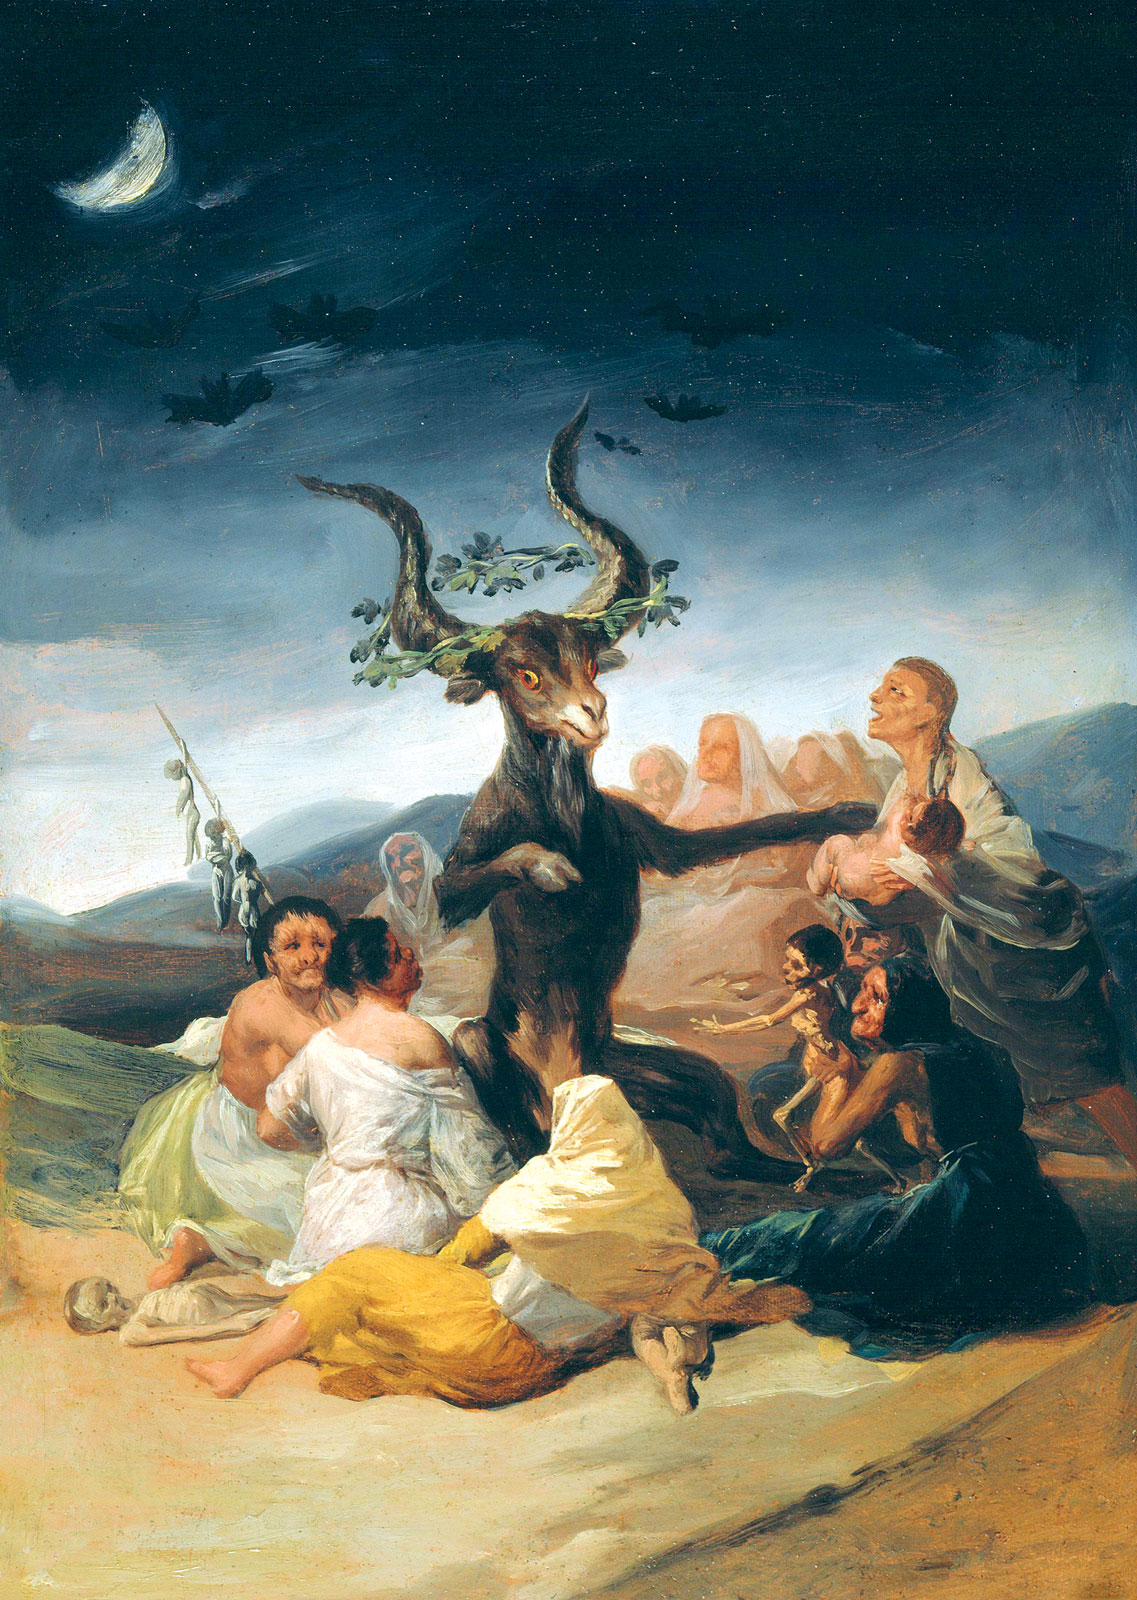 Francisco de Goya, *El aquelarre*, 1797-1798. Museo Lázaro Galdiano